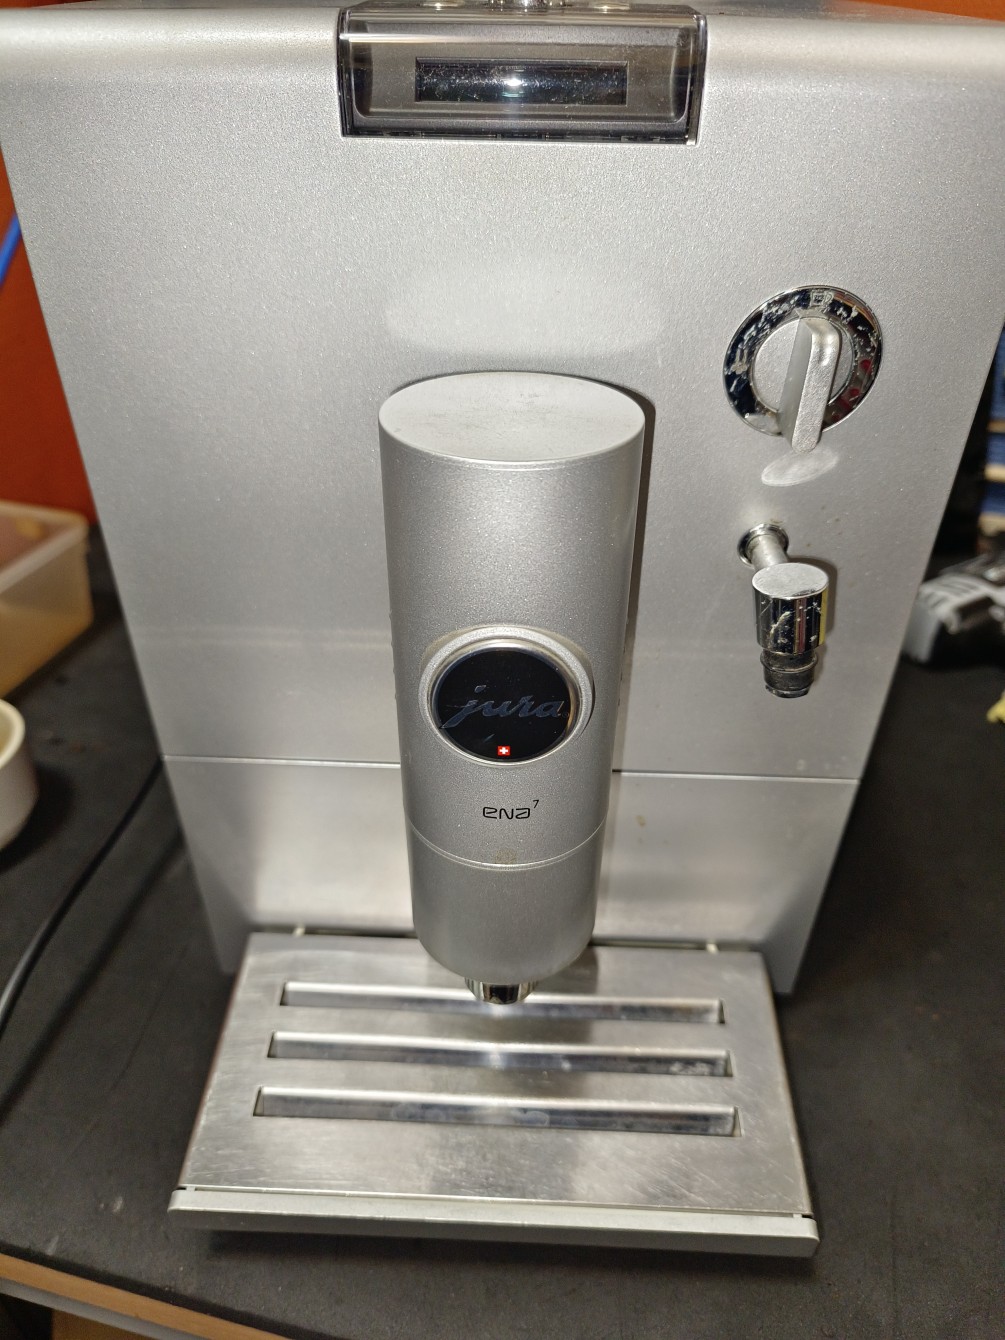 jura-ena7--全自動咖啡機-異常聲音也-維修大保養維修處理